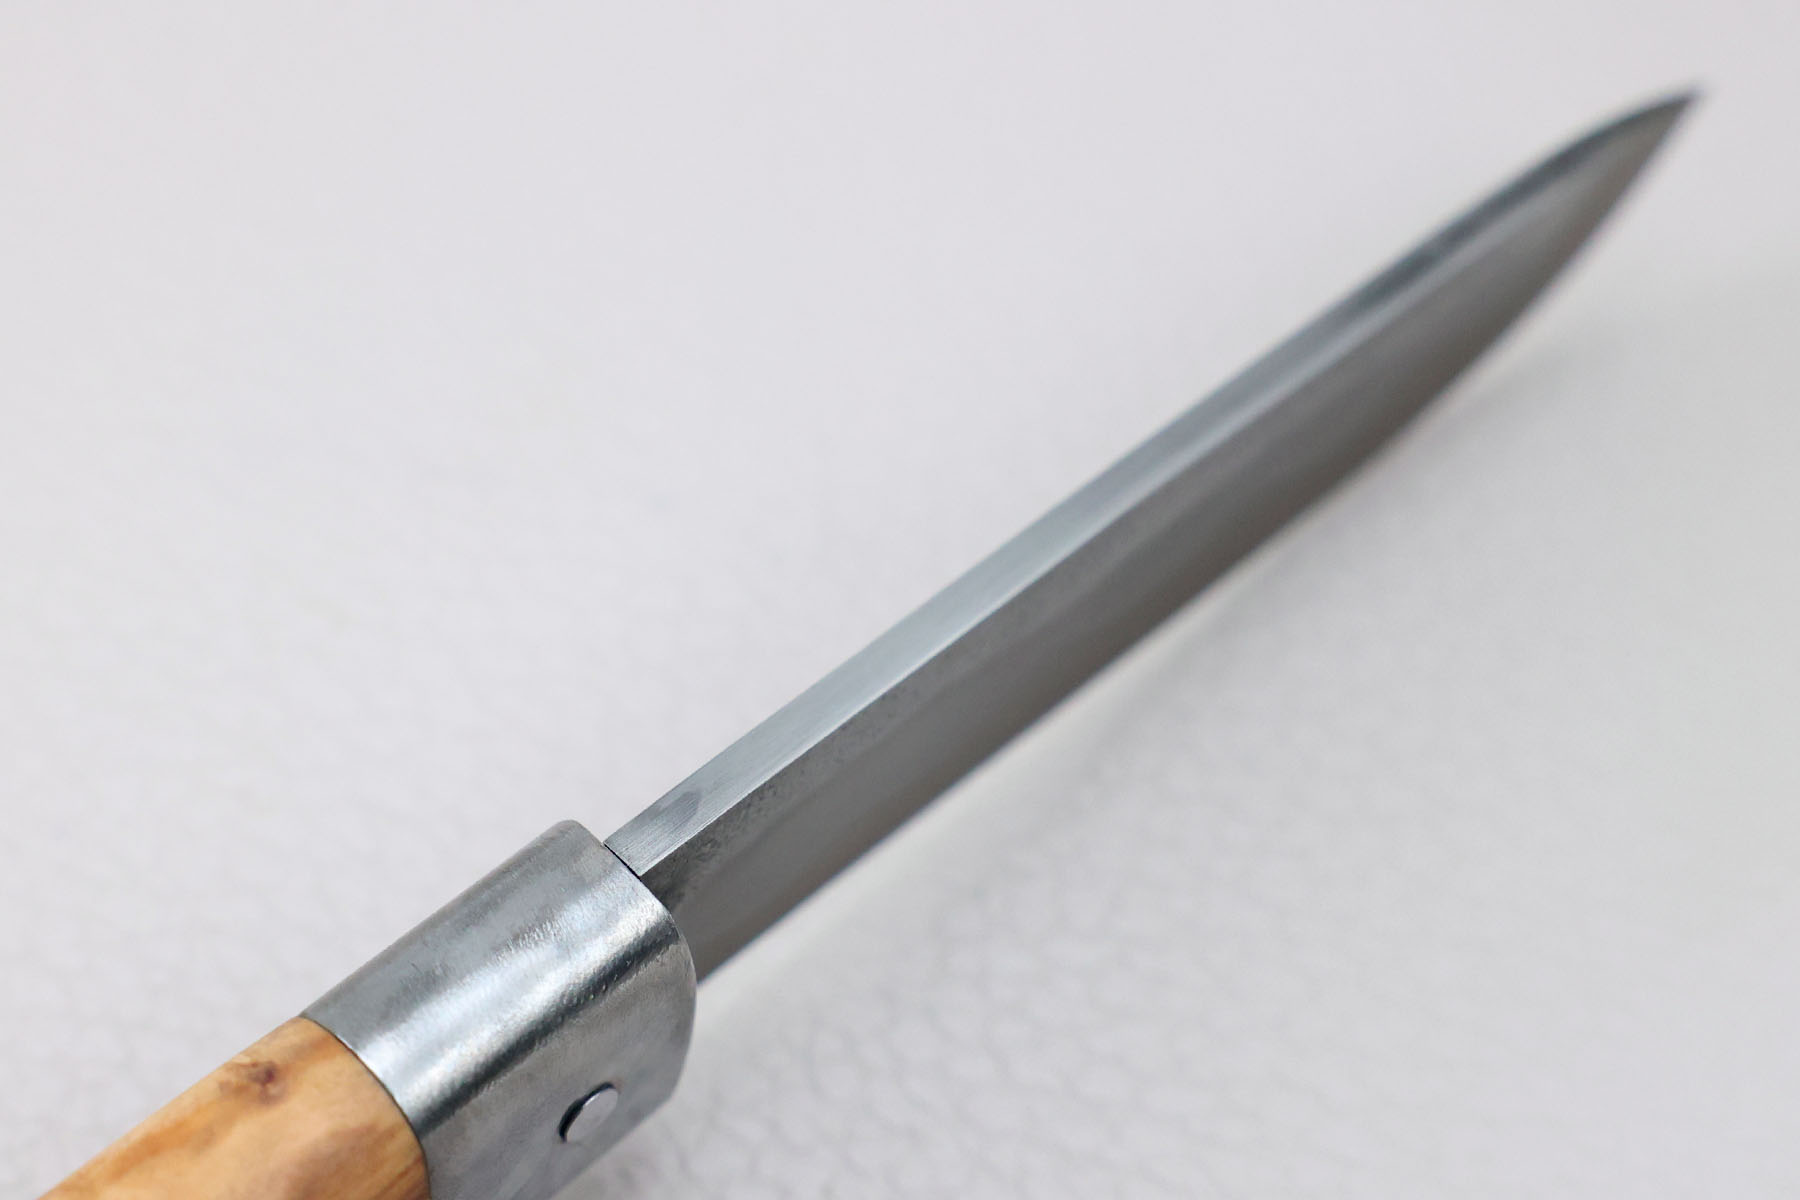 Couteau artisanal pliant Frédéric Maschio modèle Le Bugiste - White paper steel - Olivier